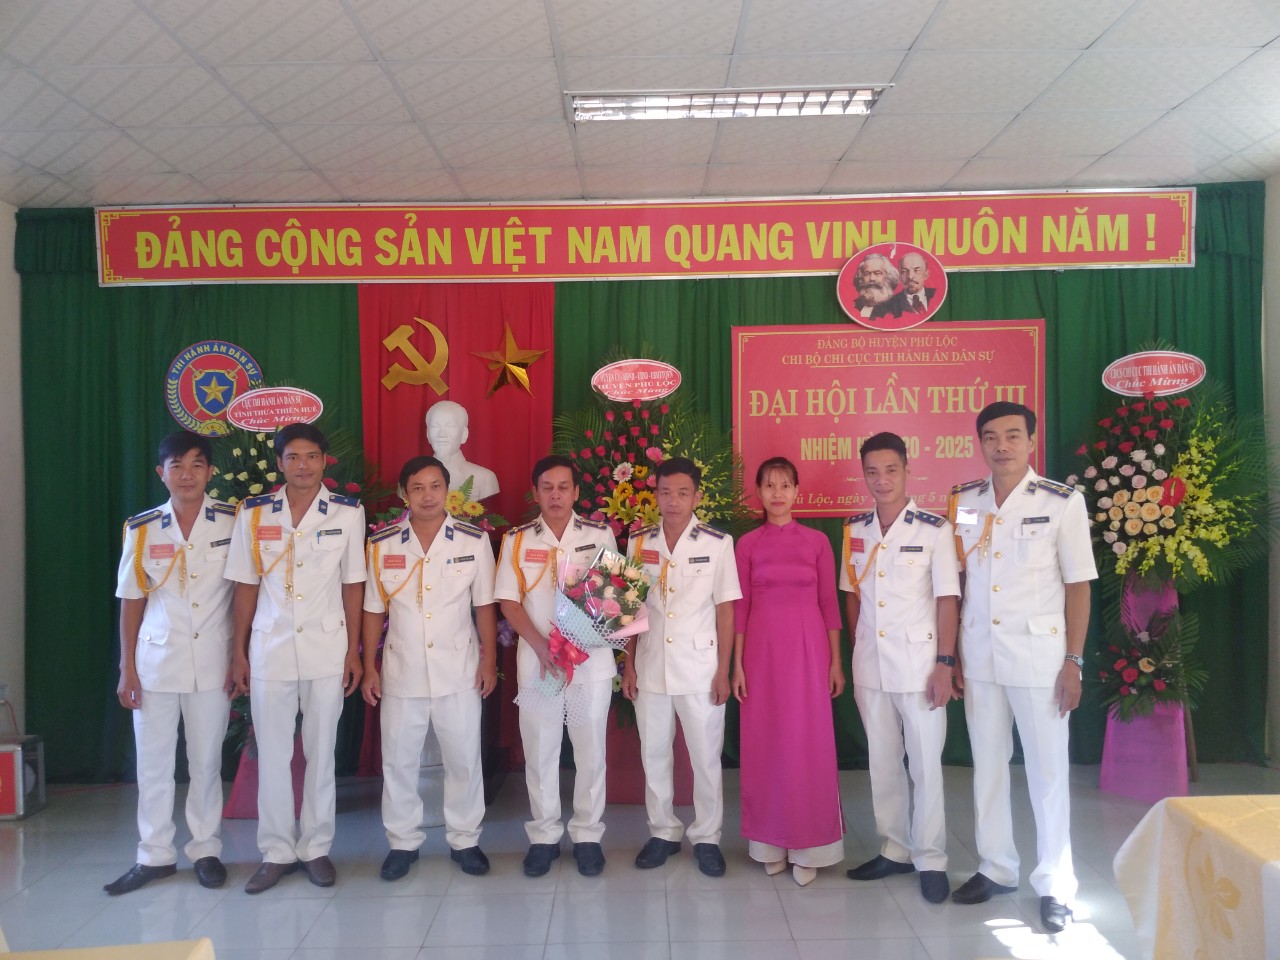 Chi bộ Chi cục THADS huyện Phú Lộc tổ chức Đại hội lần thứ III, nhiệm kỳ 2020 - 2025